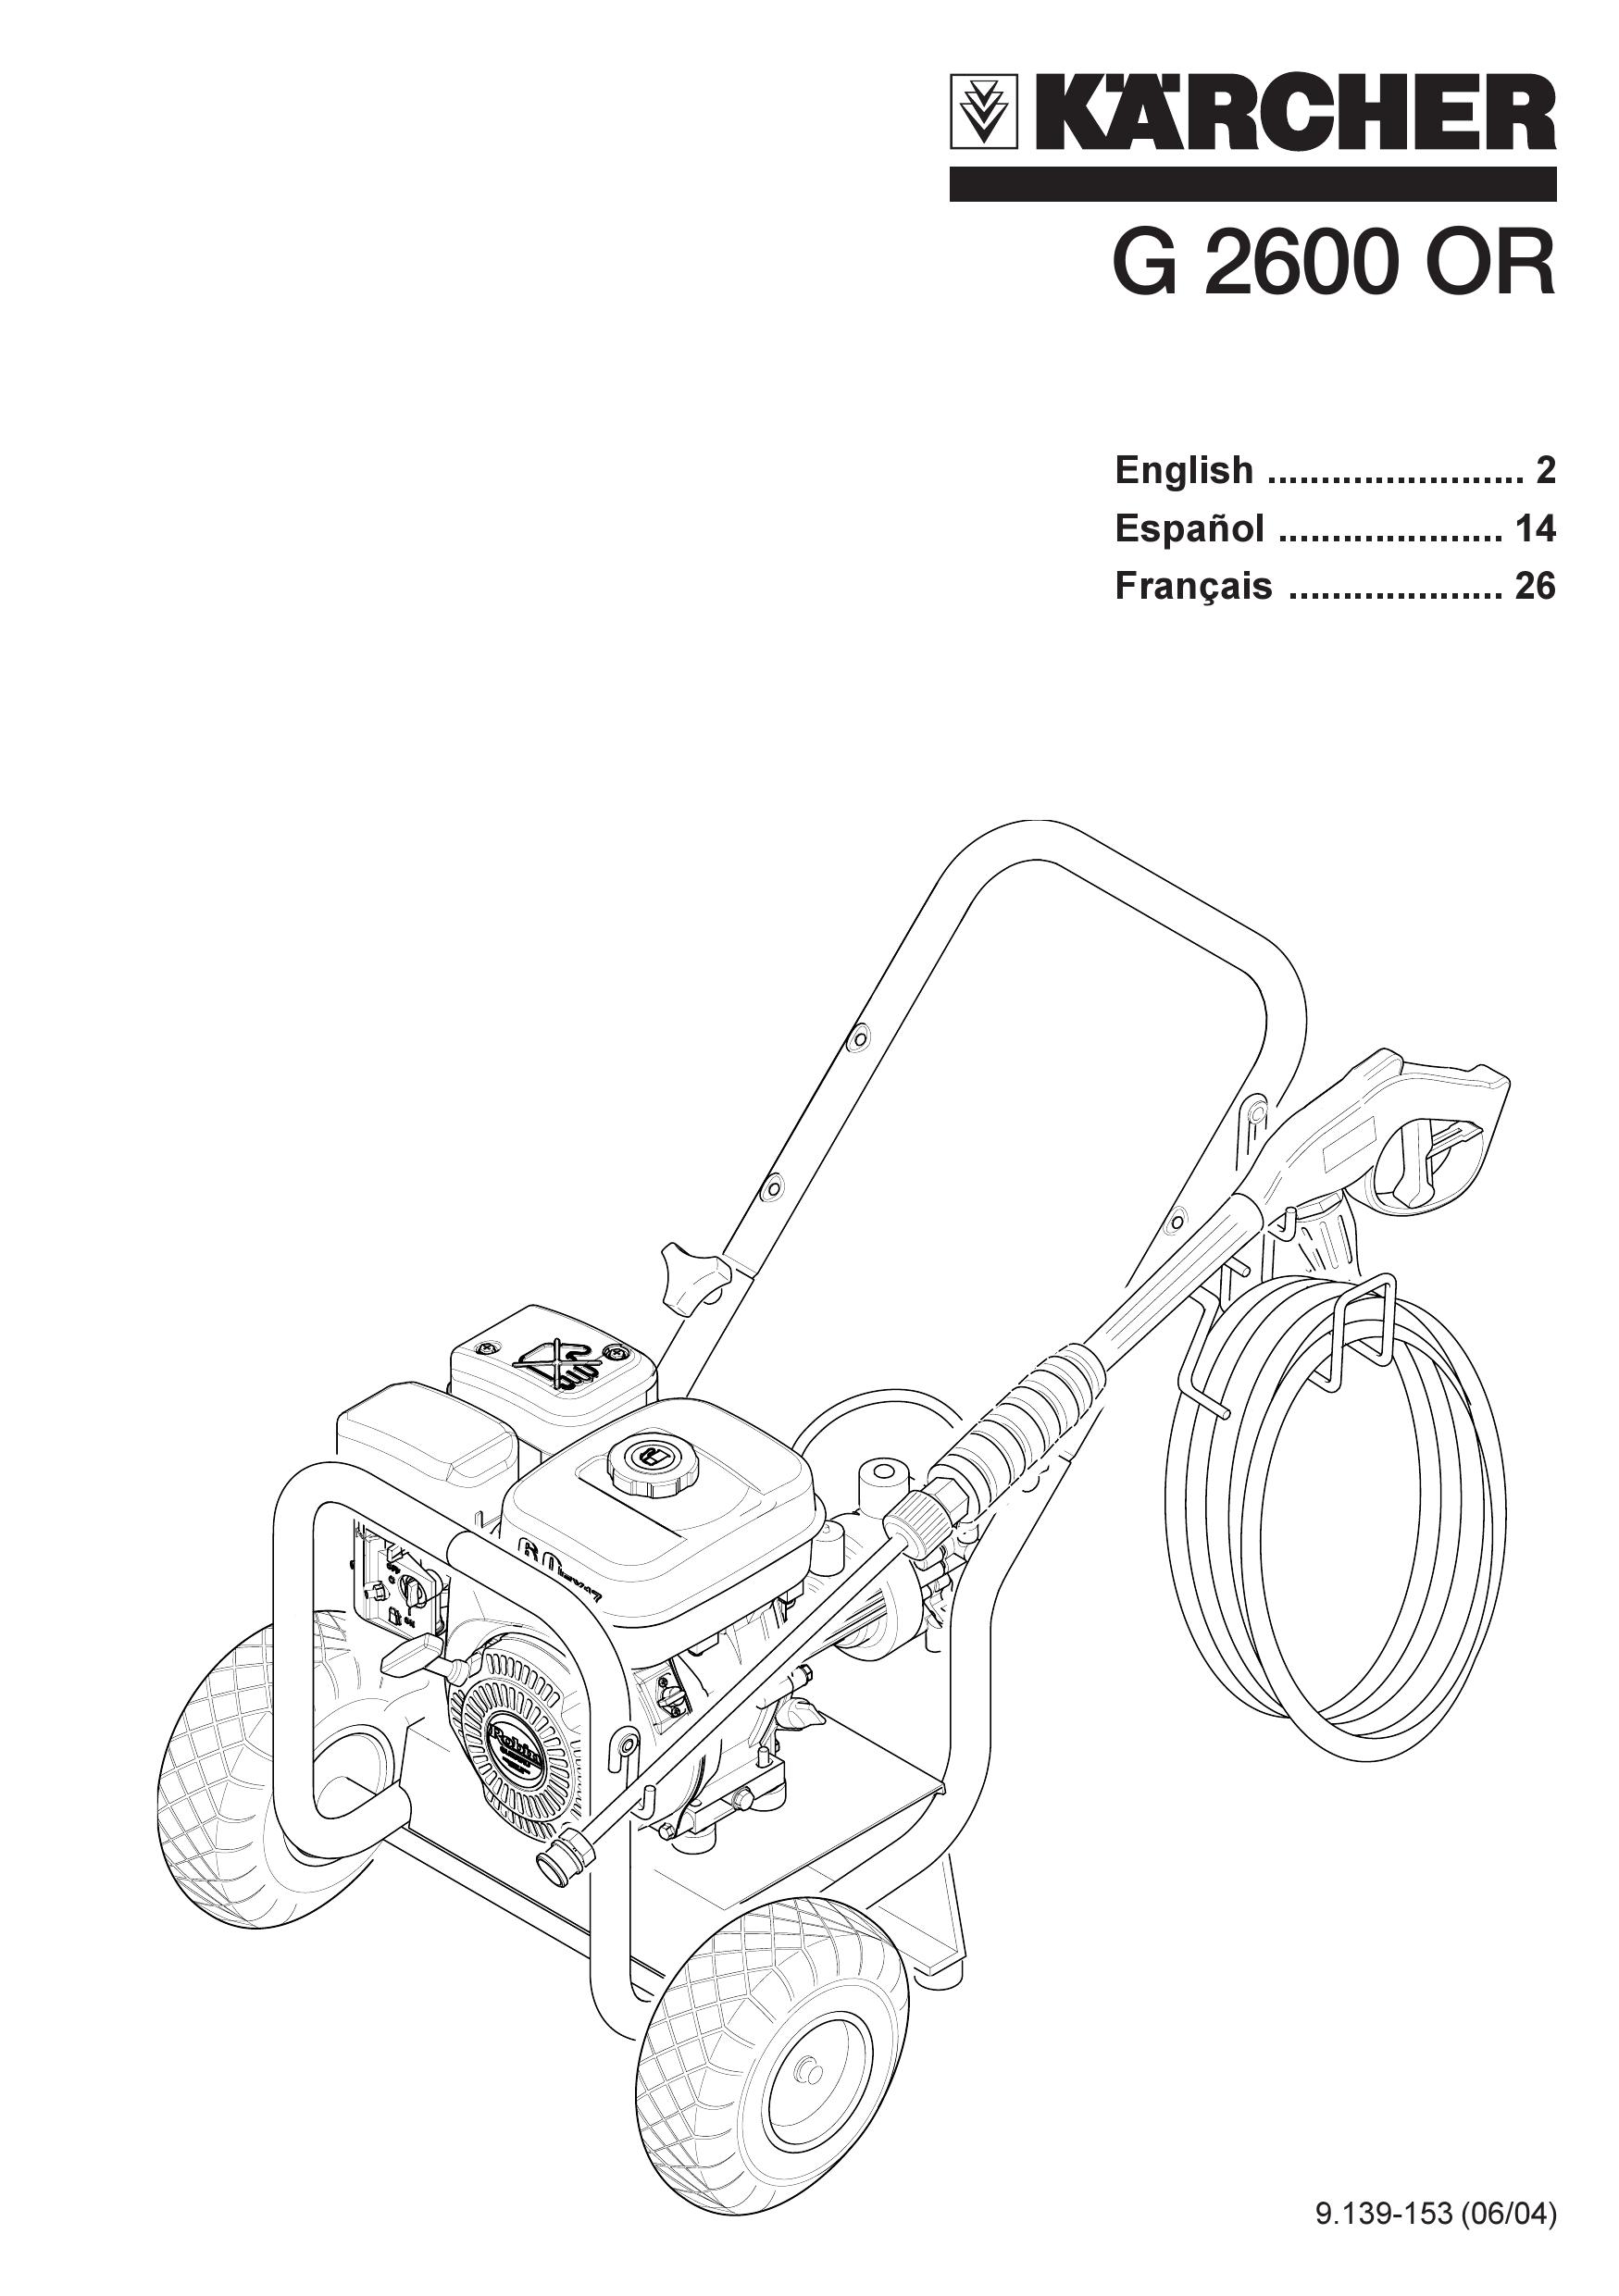 Karcher G 2600 OR Pressure Washer User Manual